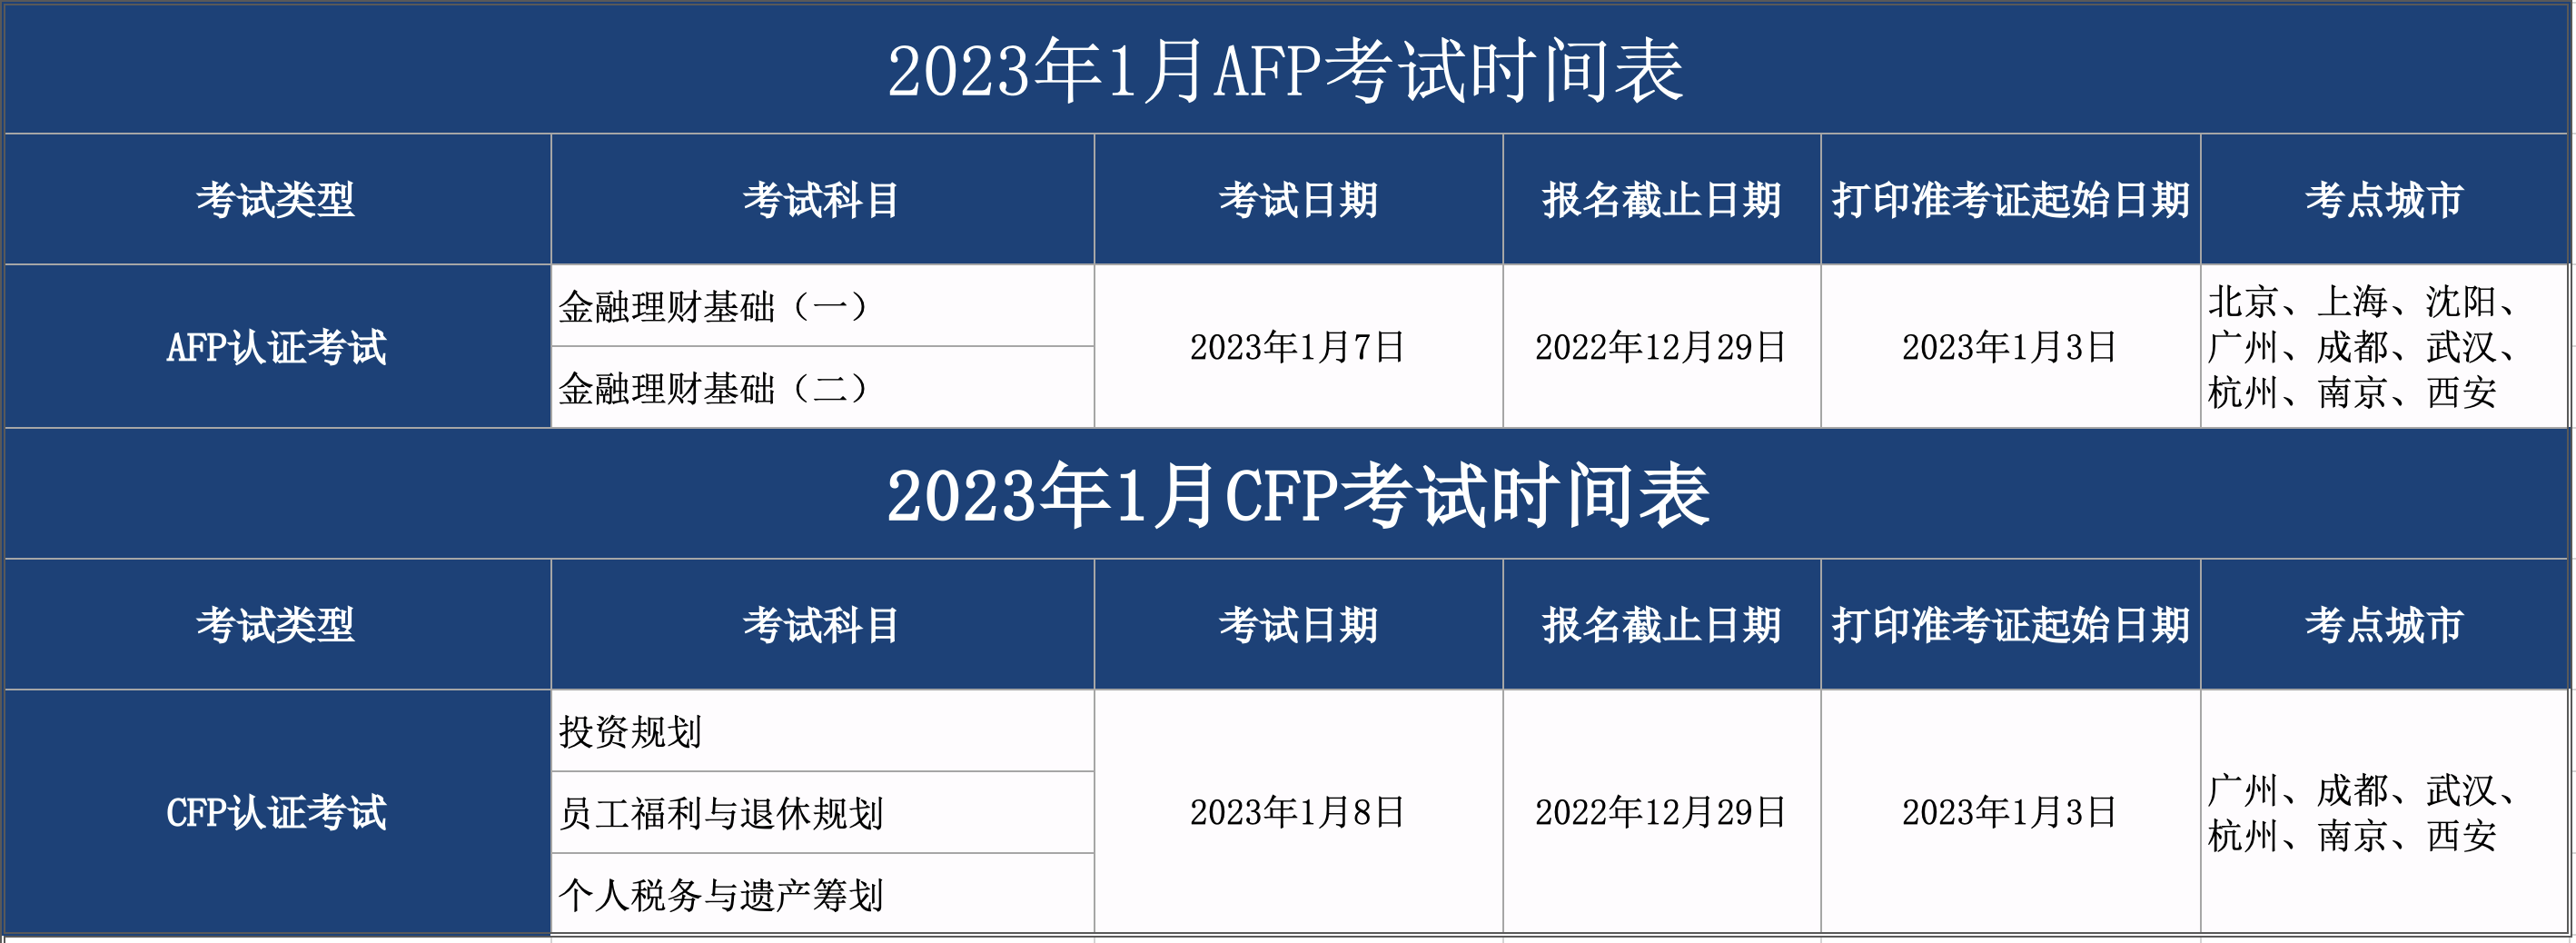 2023年1月CFP/AFP考试时间表公布通知